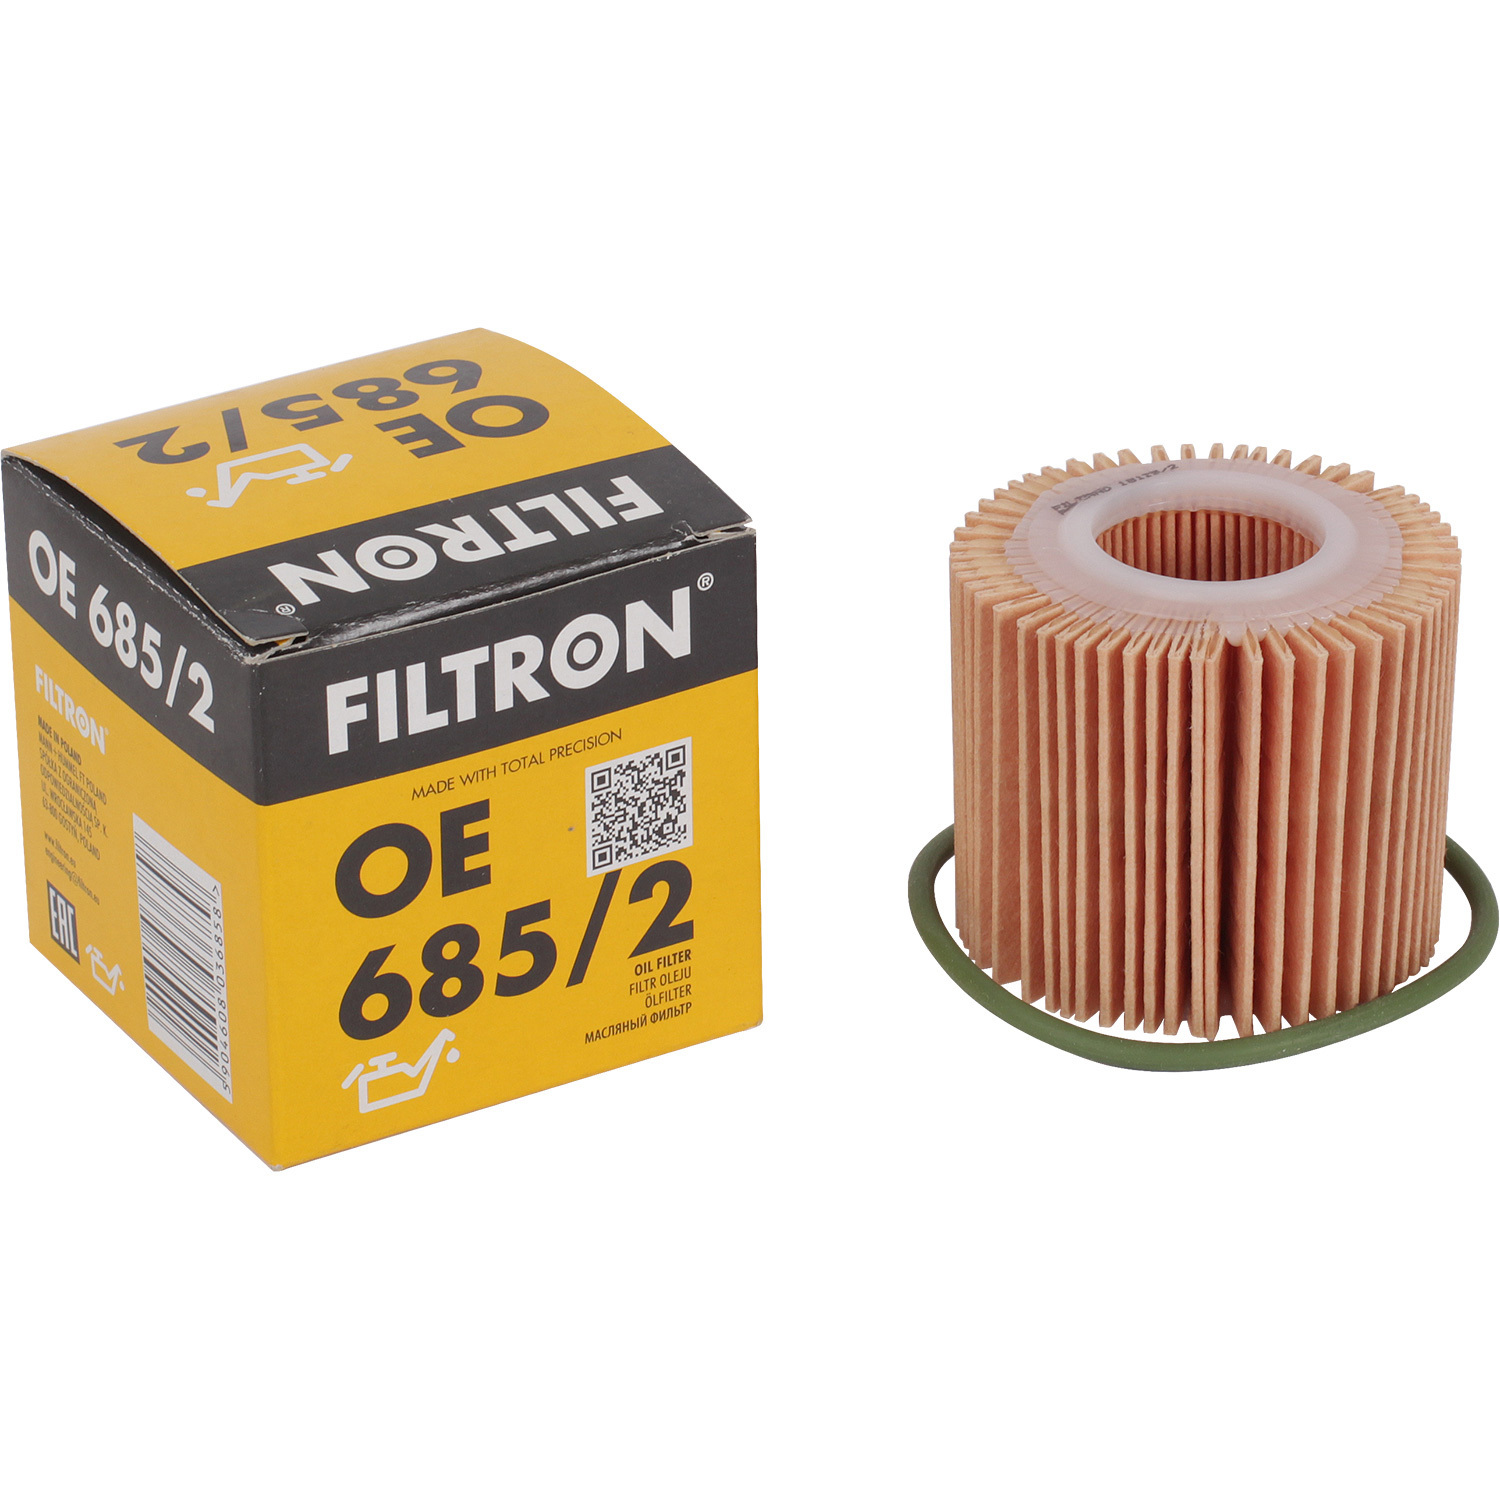 Фильтры Filtron Фильтр масляный Filtron OE6852 фильтр масляный filtron oe 649 8